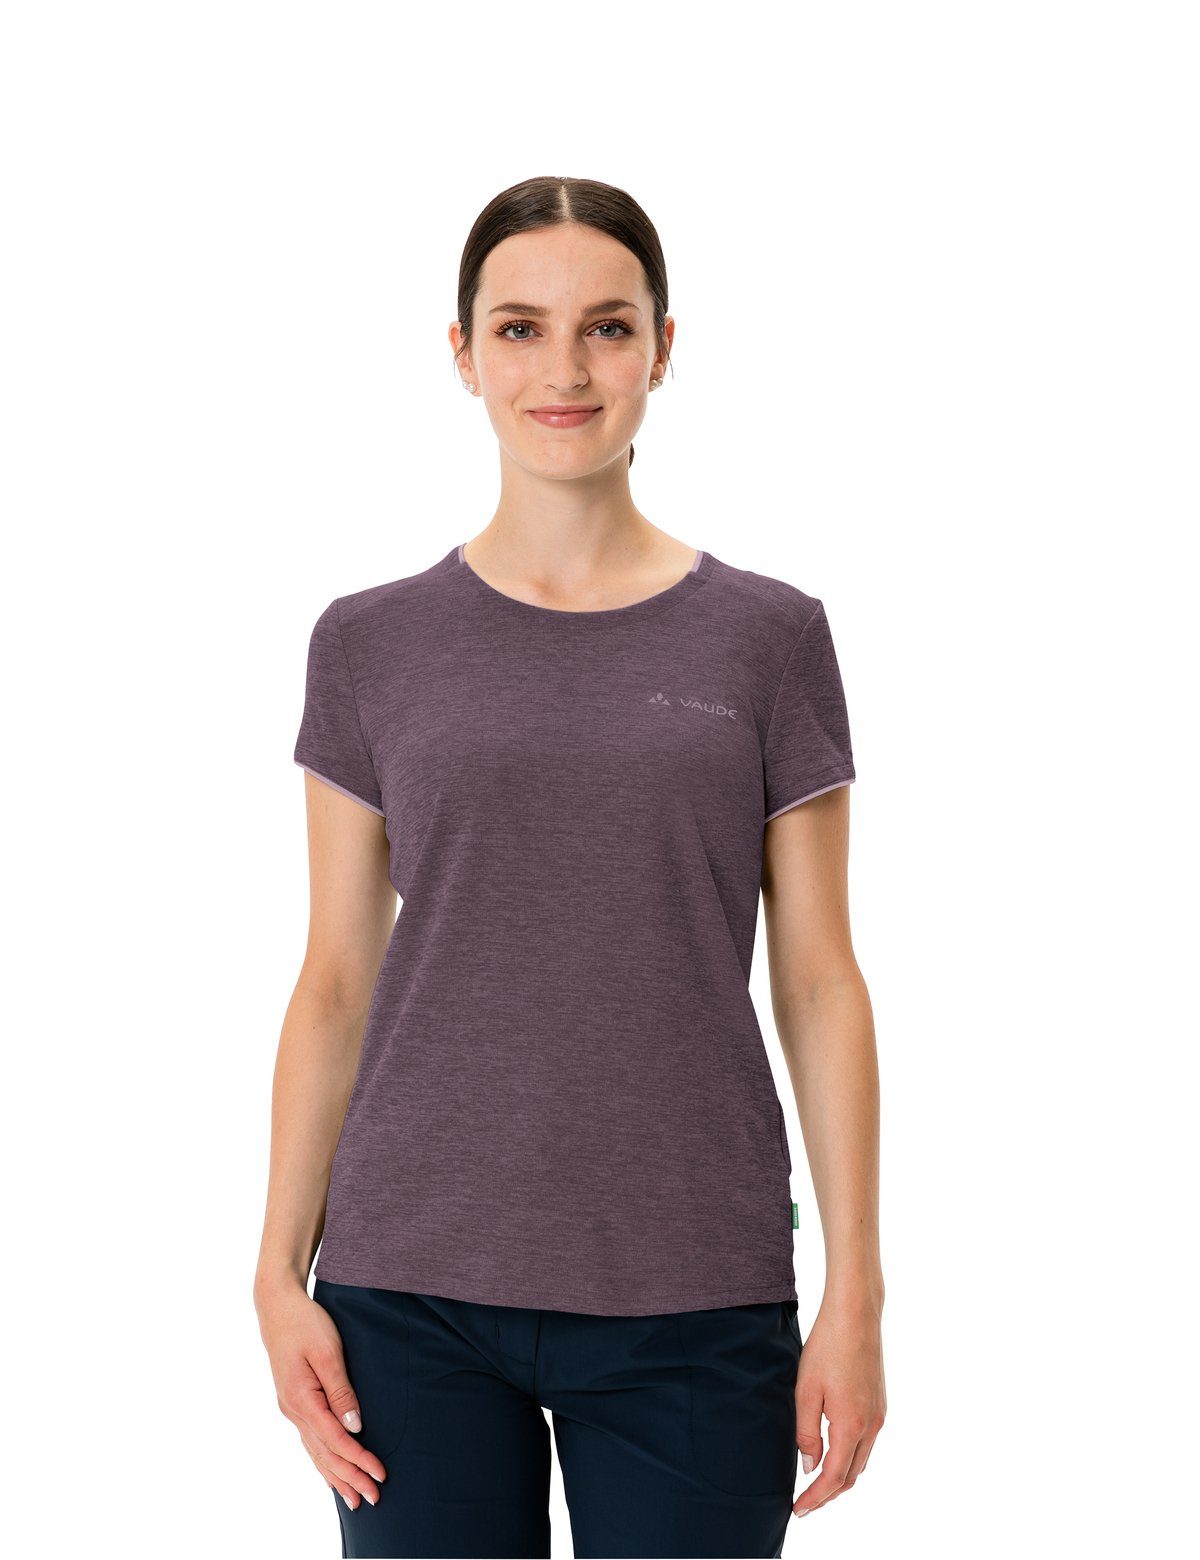 Grüner (1-tlg) blackberry T-Shirt Women's Knopf Essential VAUDE T-Shirt